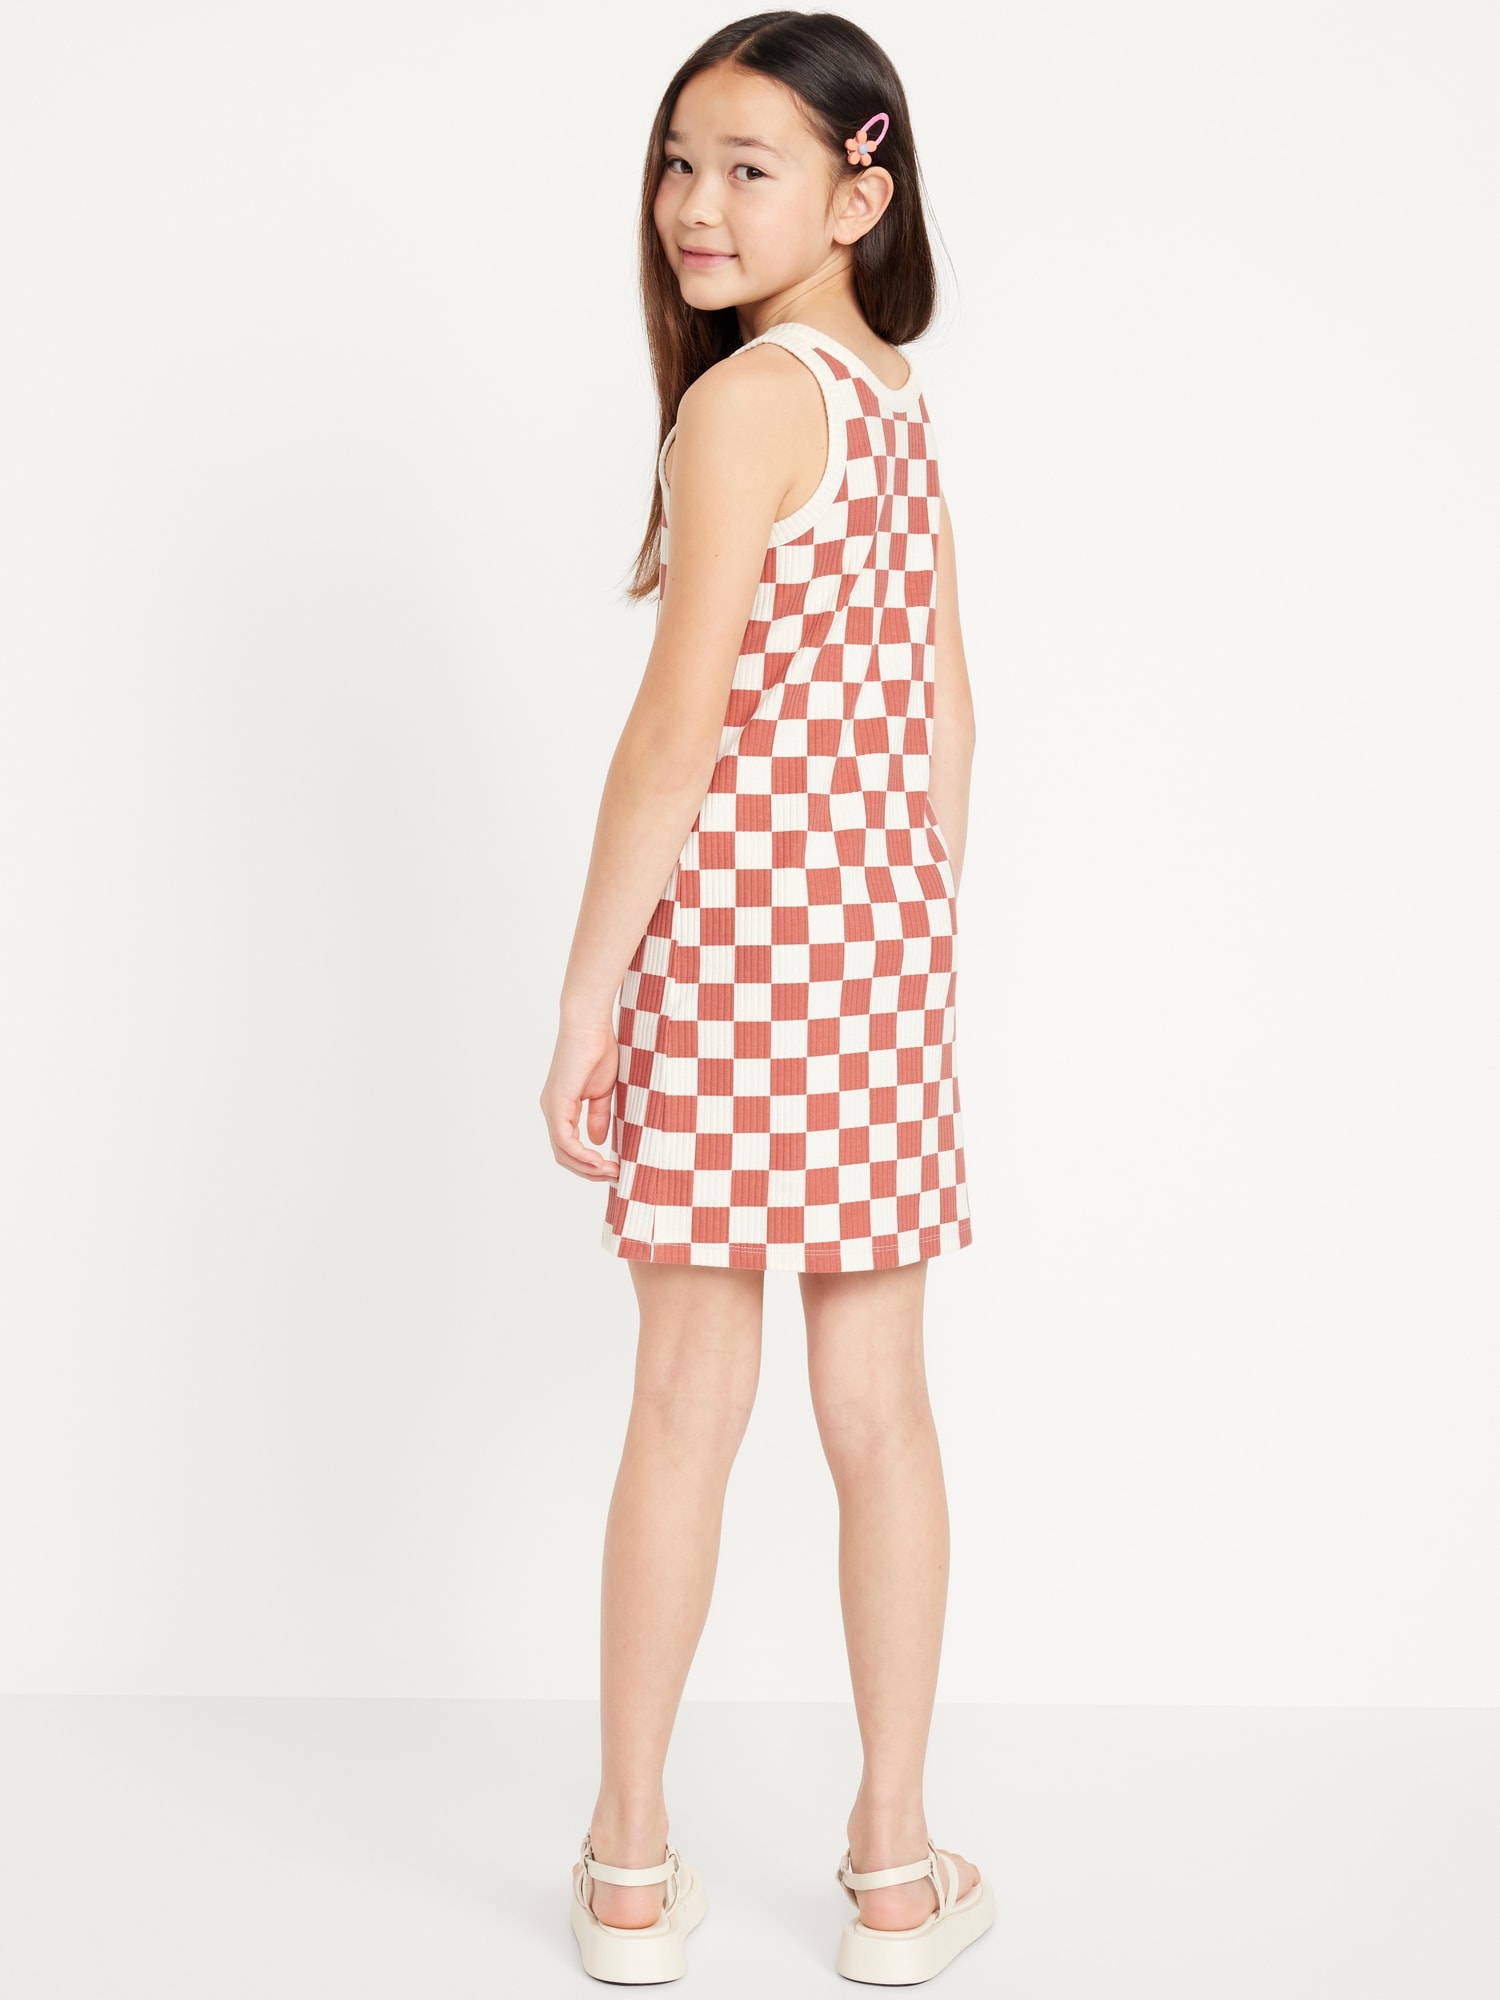 올드네이비 Printed Sleeveless Rib-Knit Dress for Girls Hot Deal